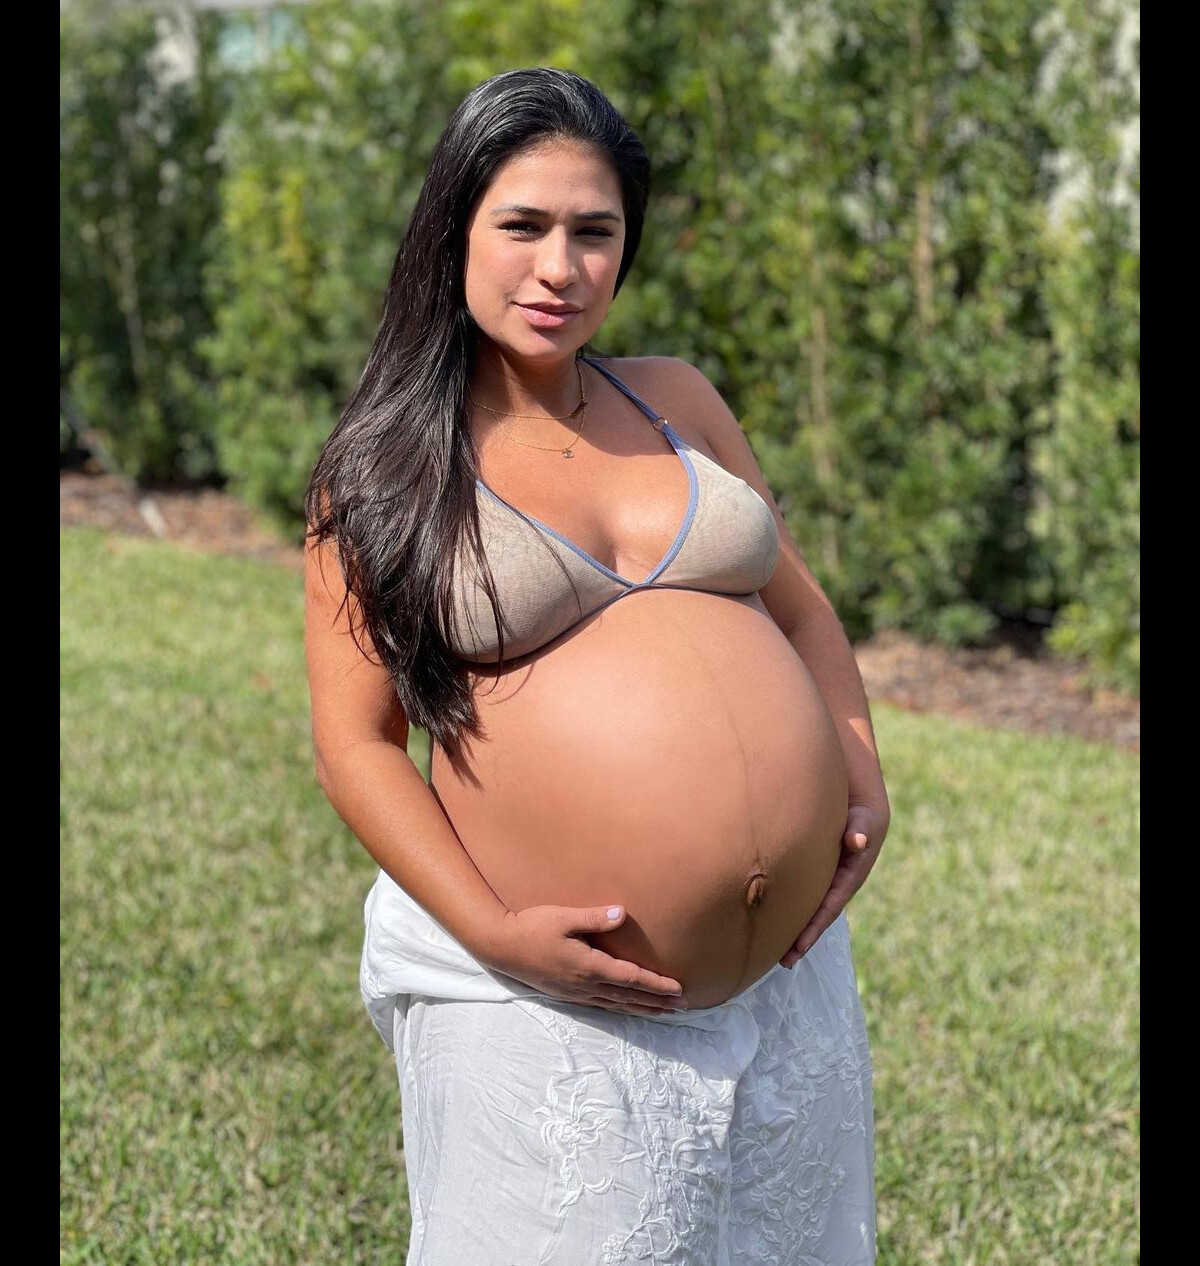 Simone mostra resultado de abdominoplastia em foto de biquíni - Zoeira -  Diário do Nordeste